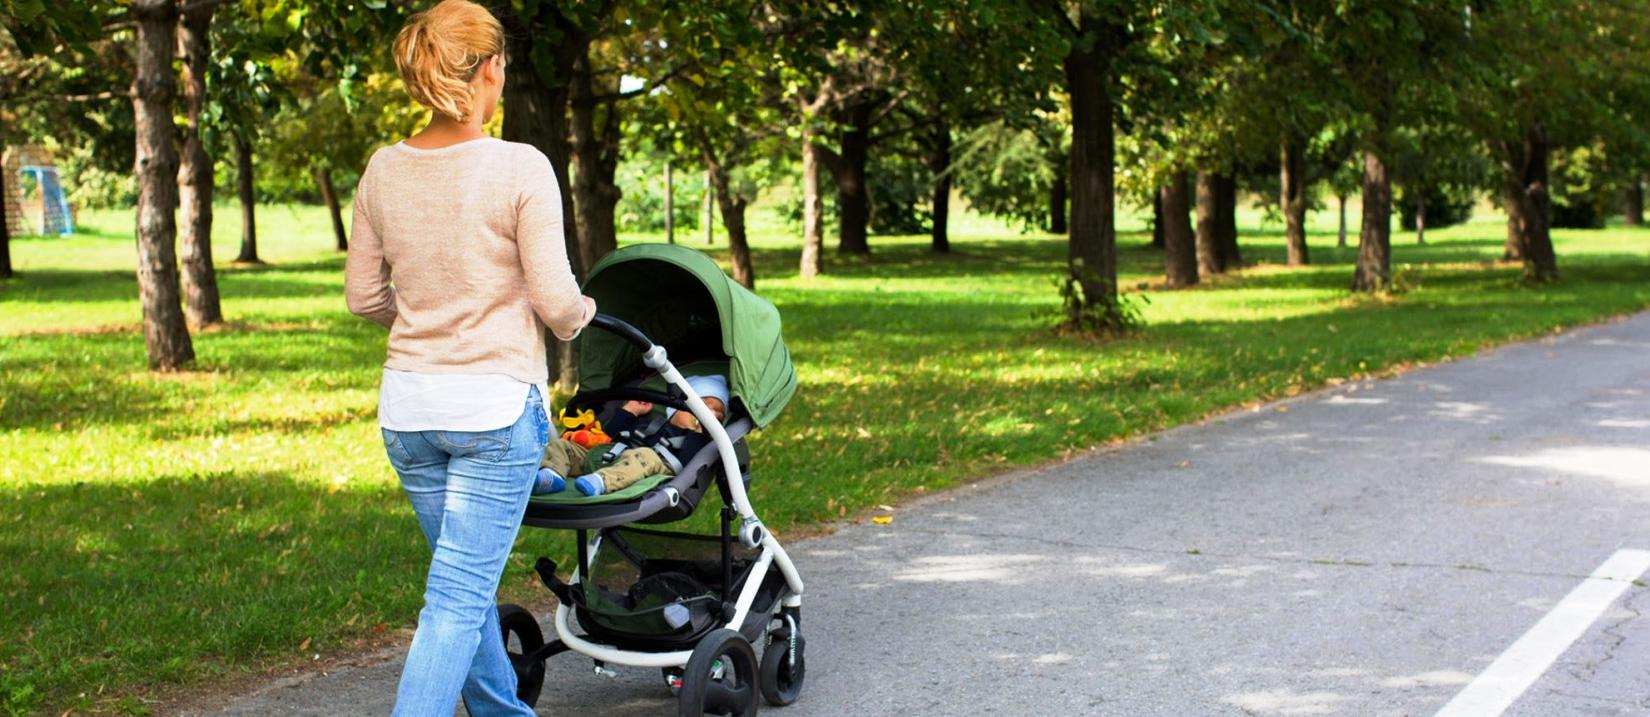 Χρήσιμες συμβουλές για την πρώτη βόλτα του νεογέννητου